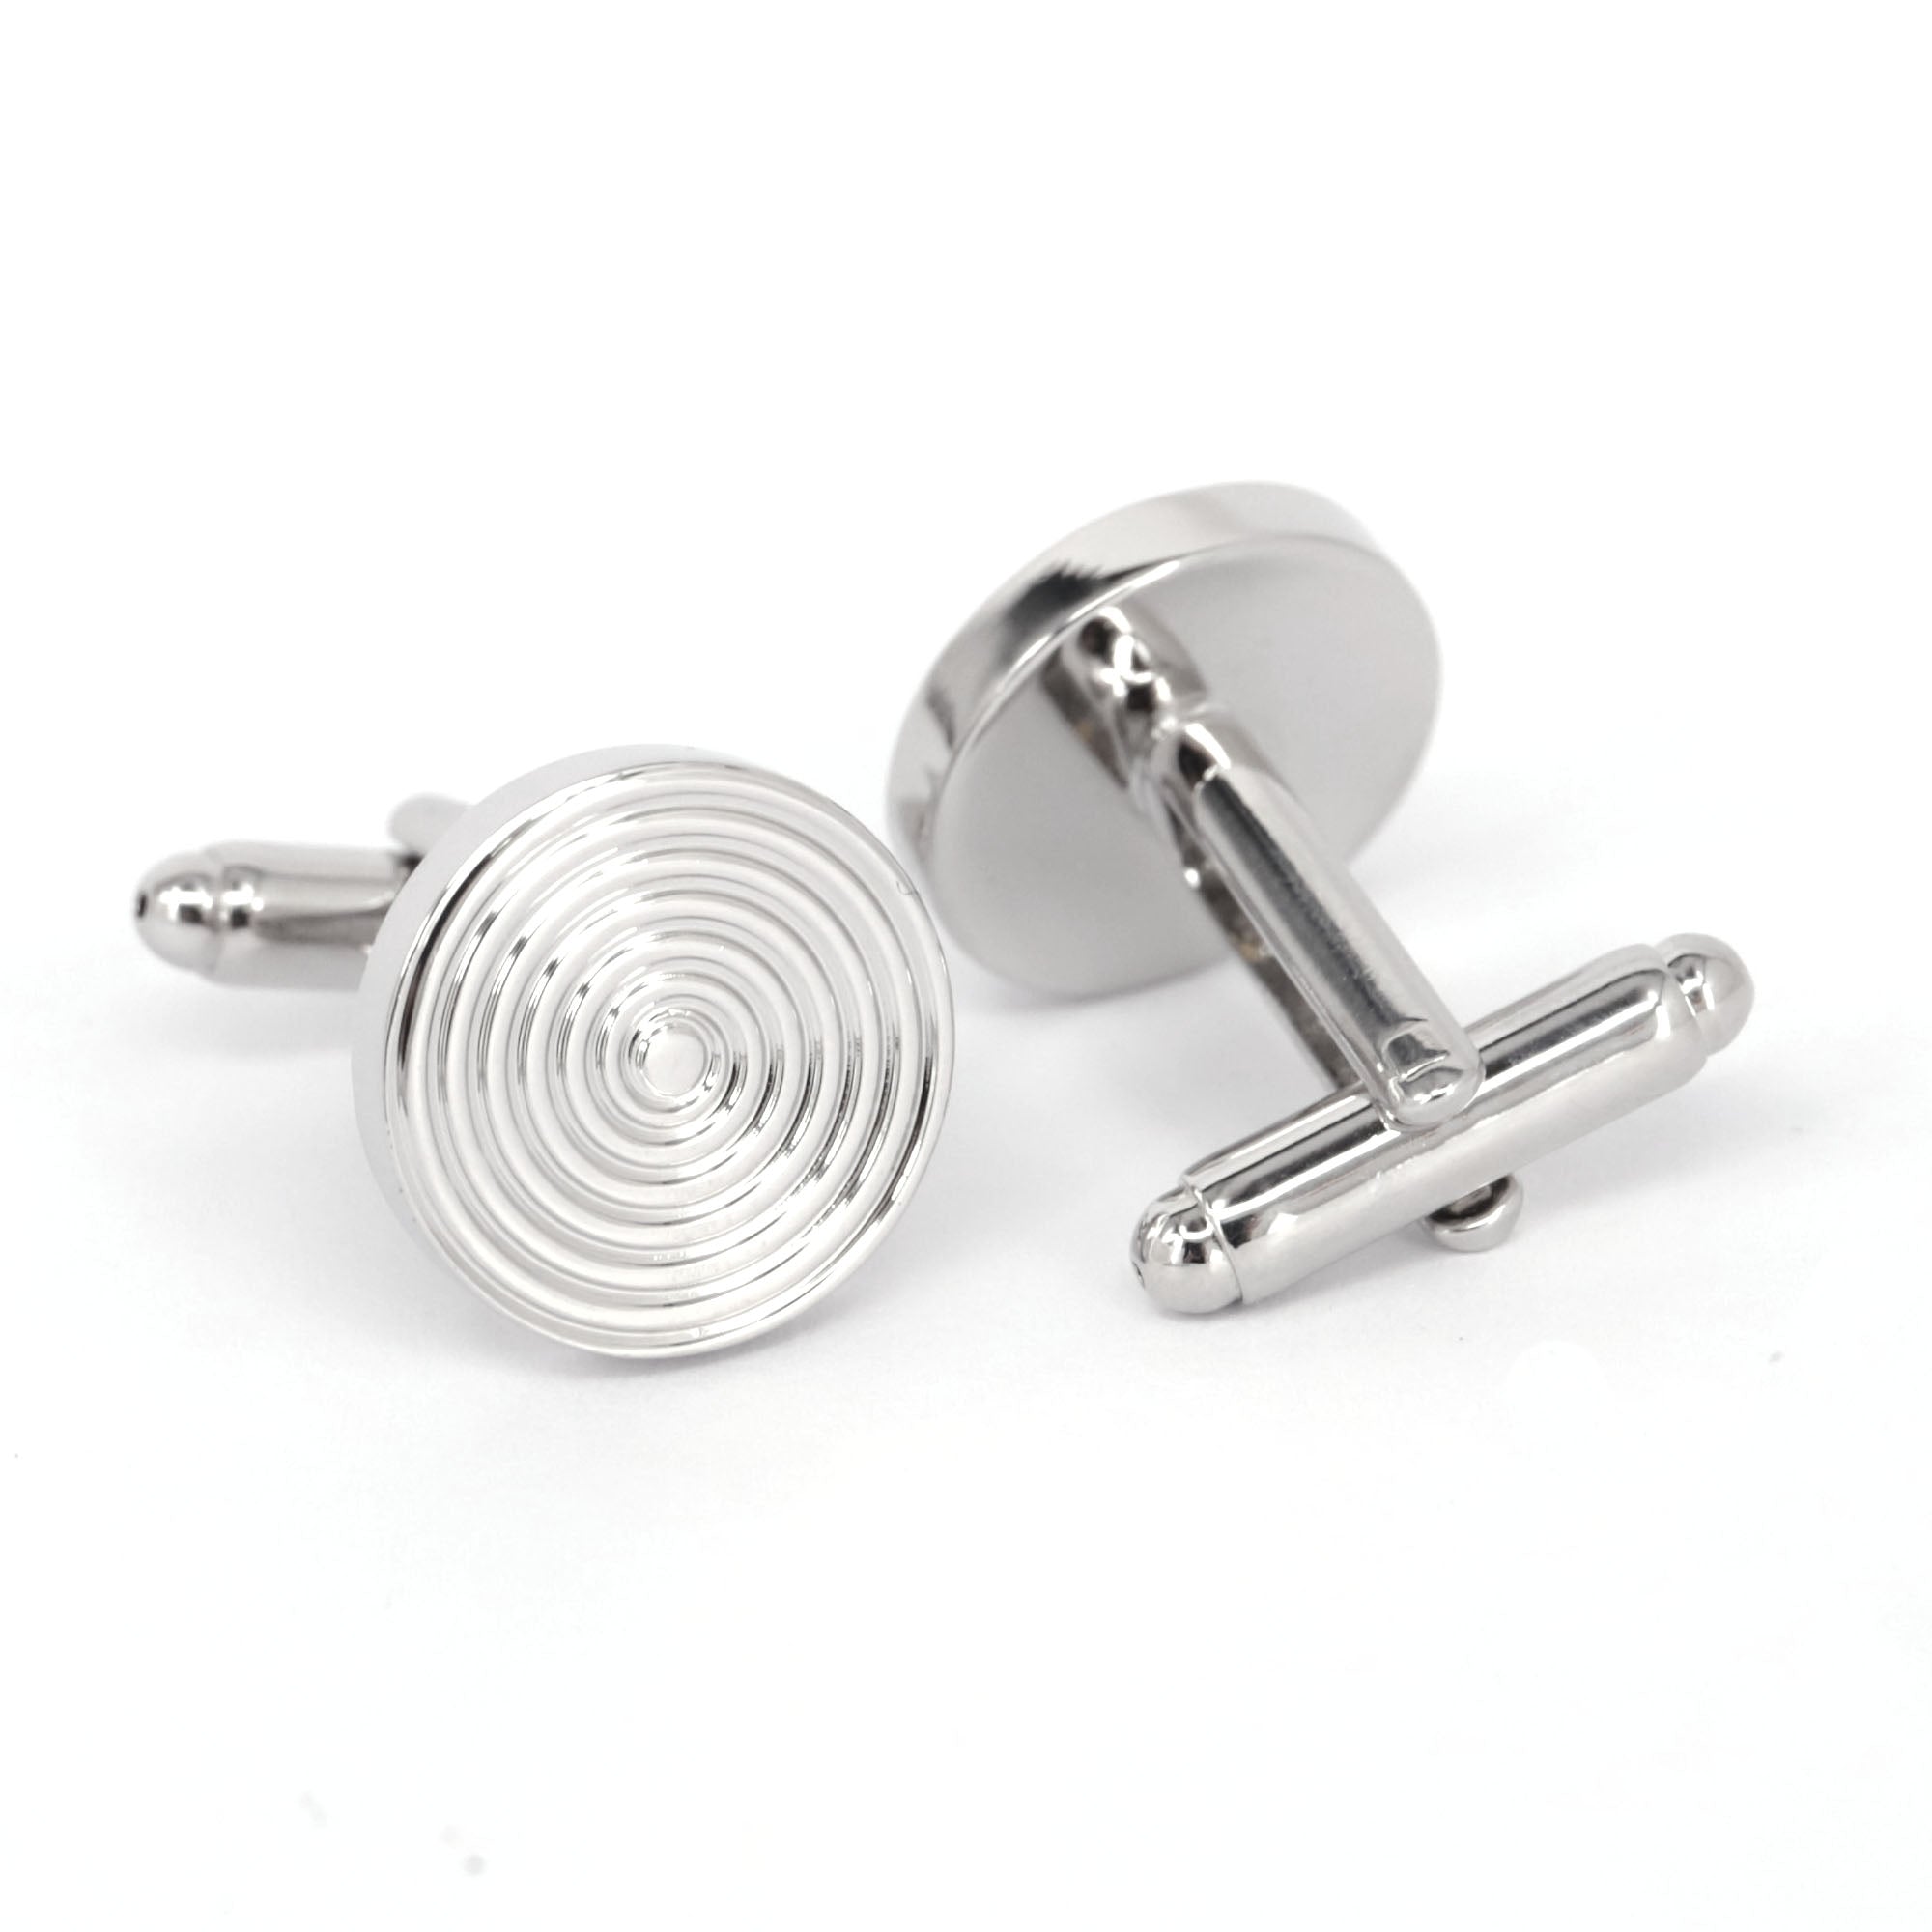 Round Spiral Cufflinks in Silver